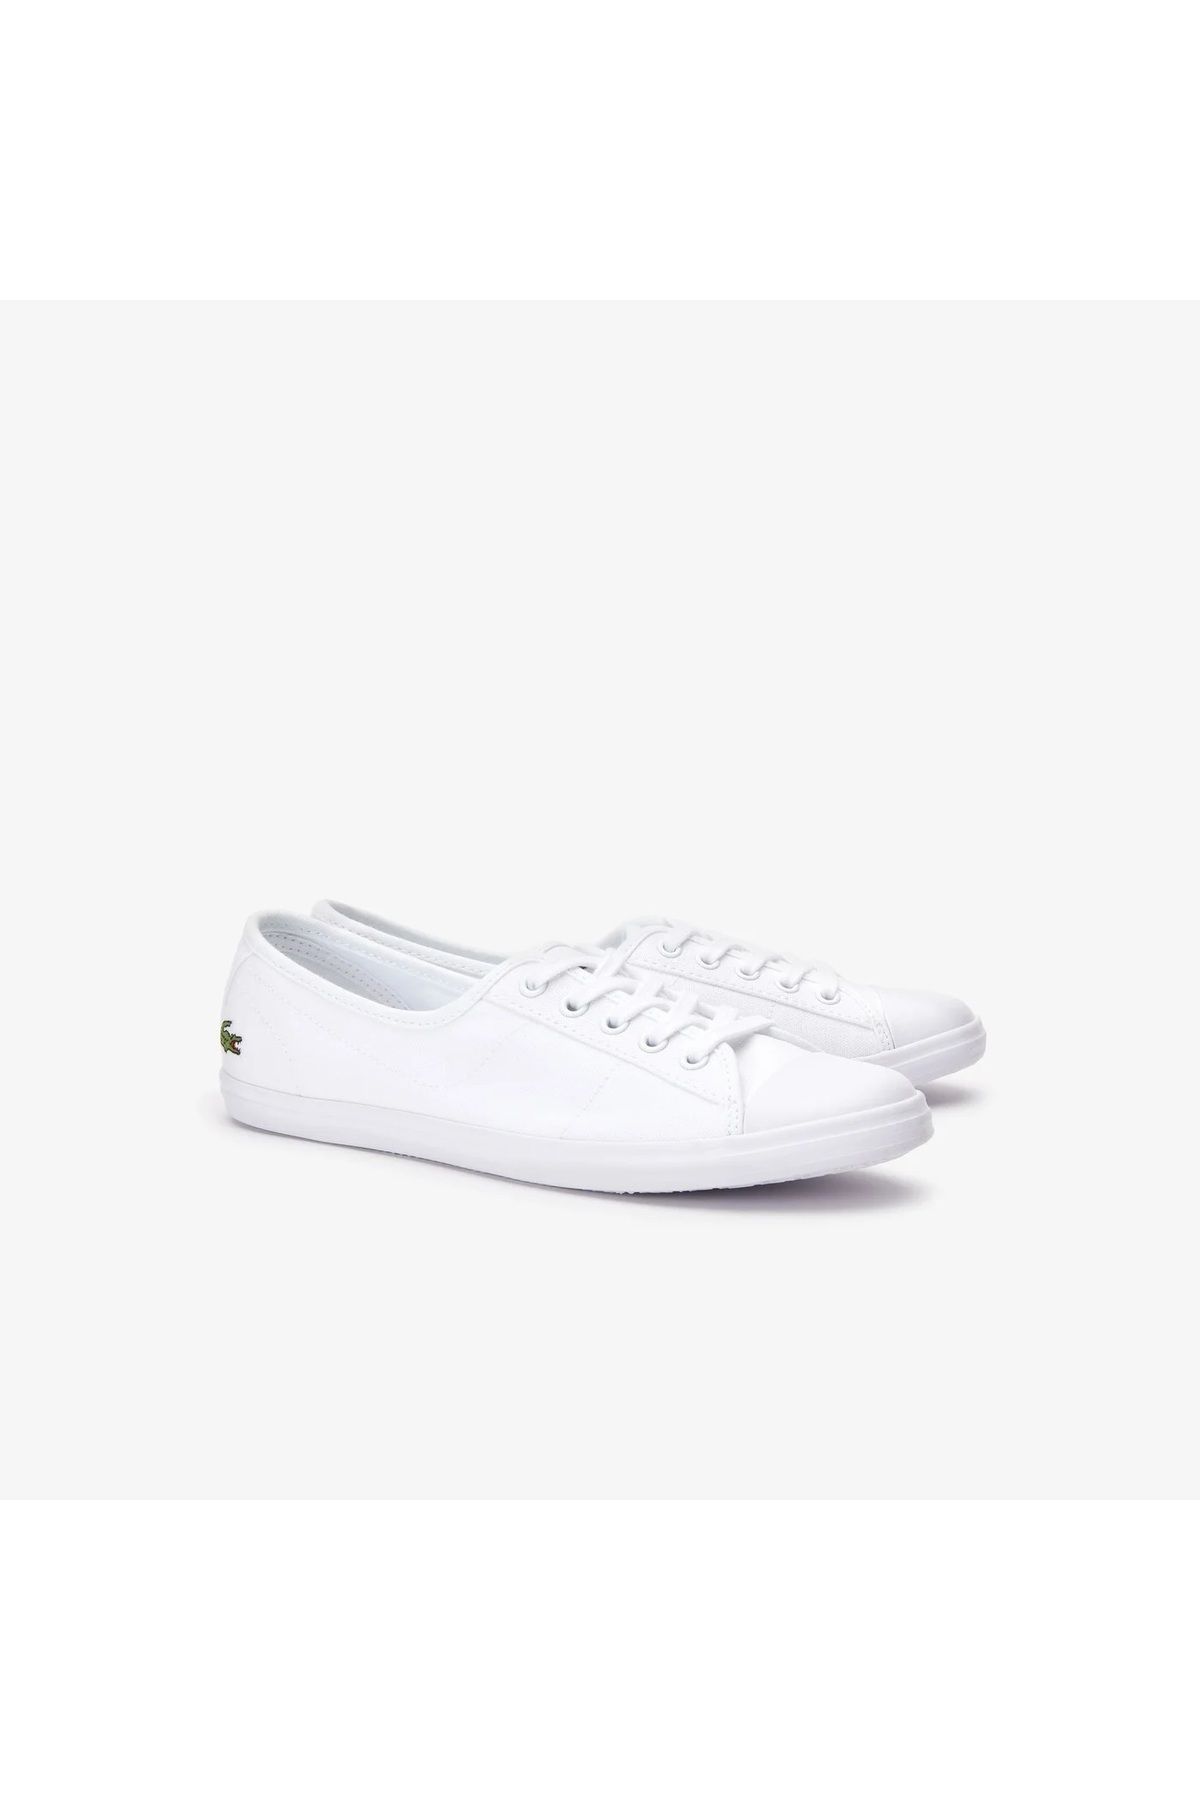 Lacoste beyaz kadın ayakkabı